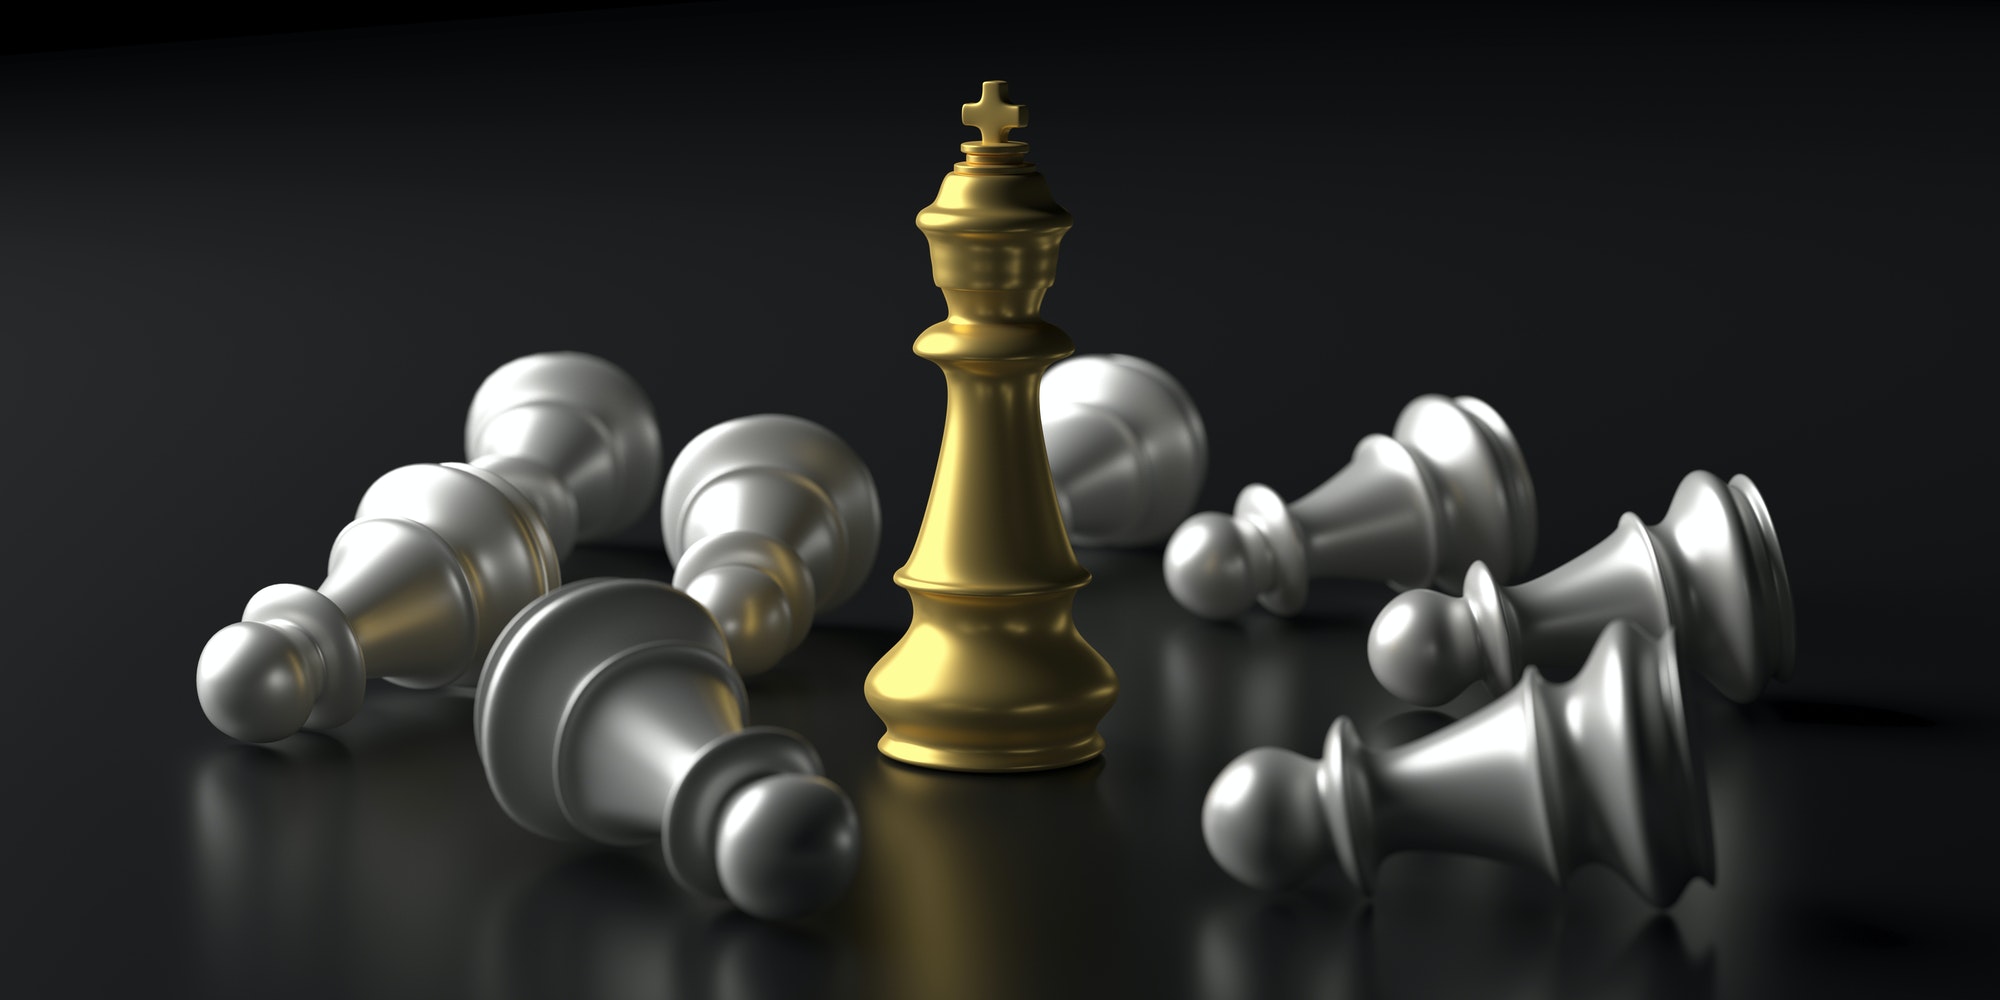 Chess king gold standing winner on black background. 3d illustration